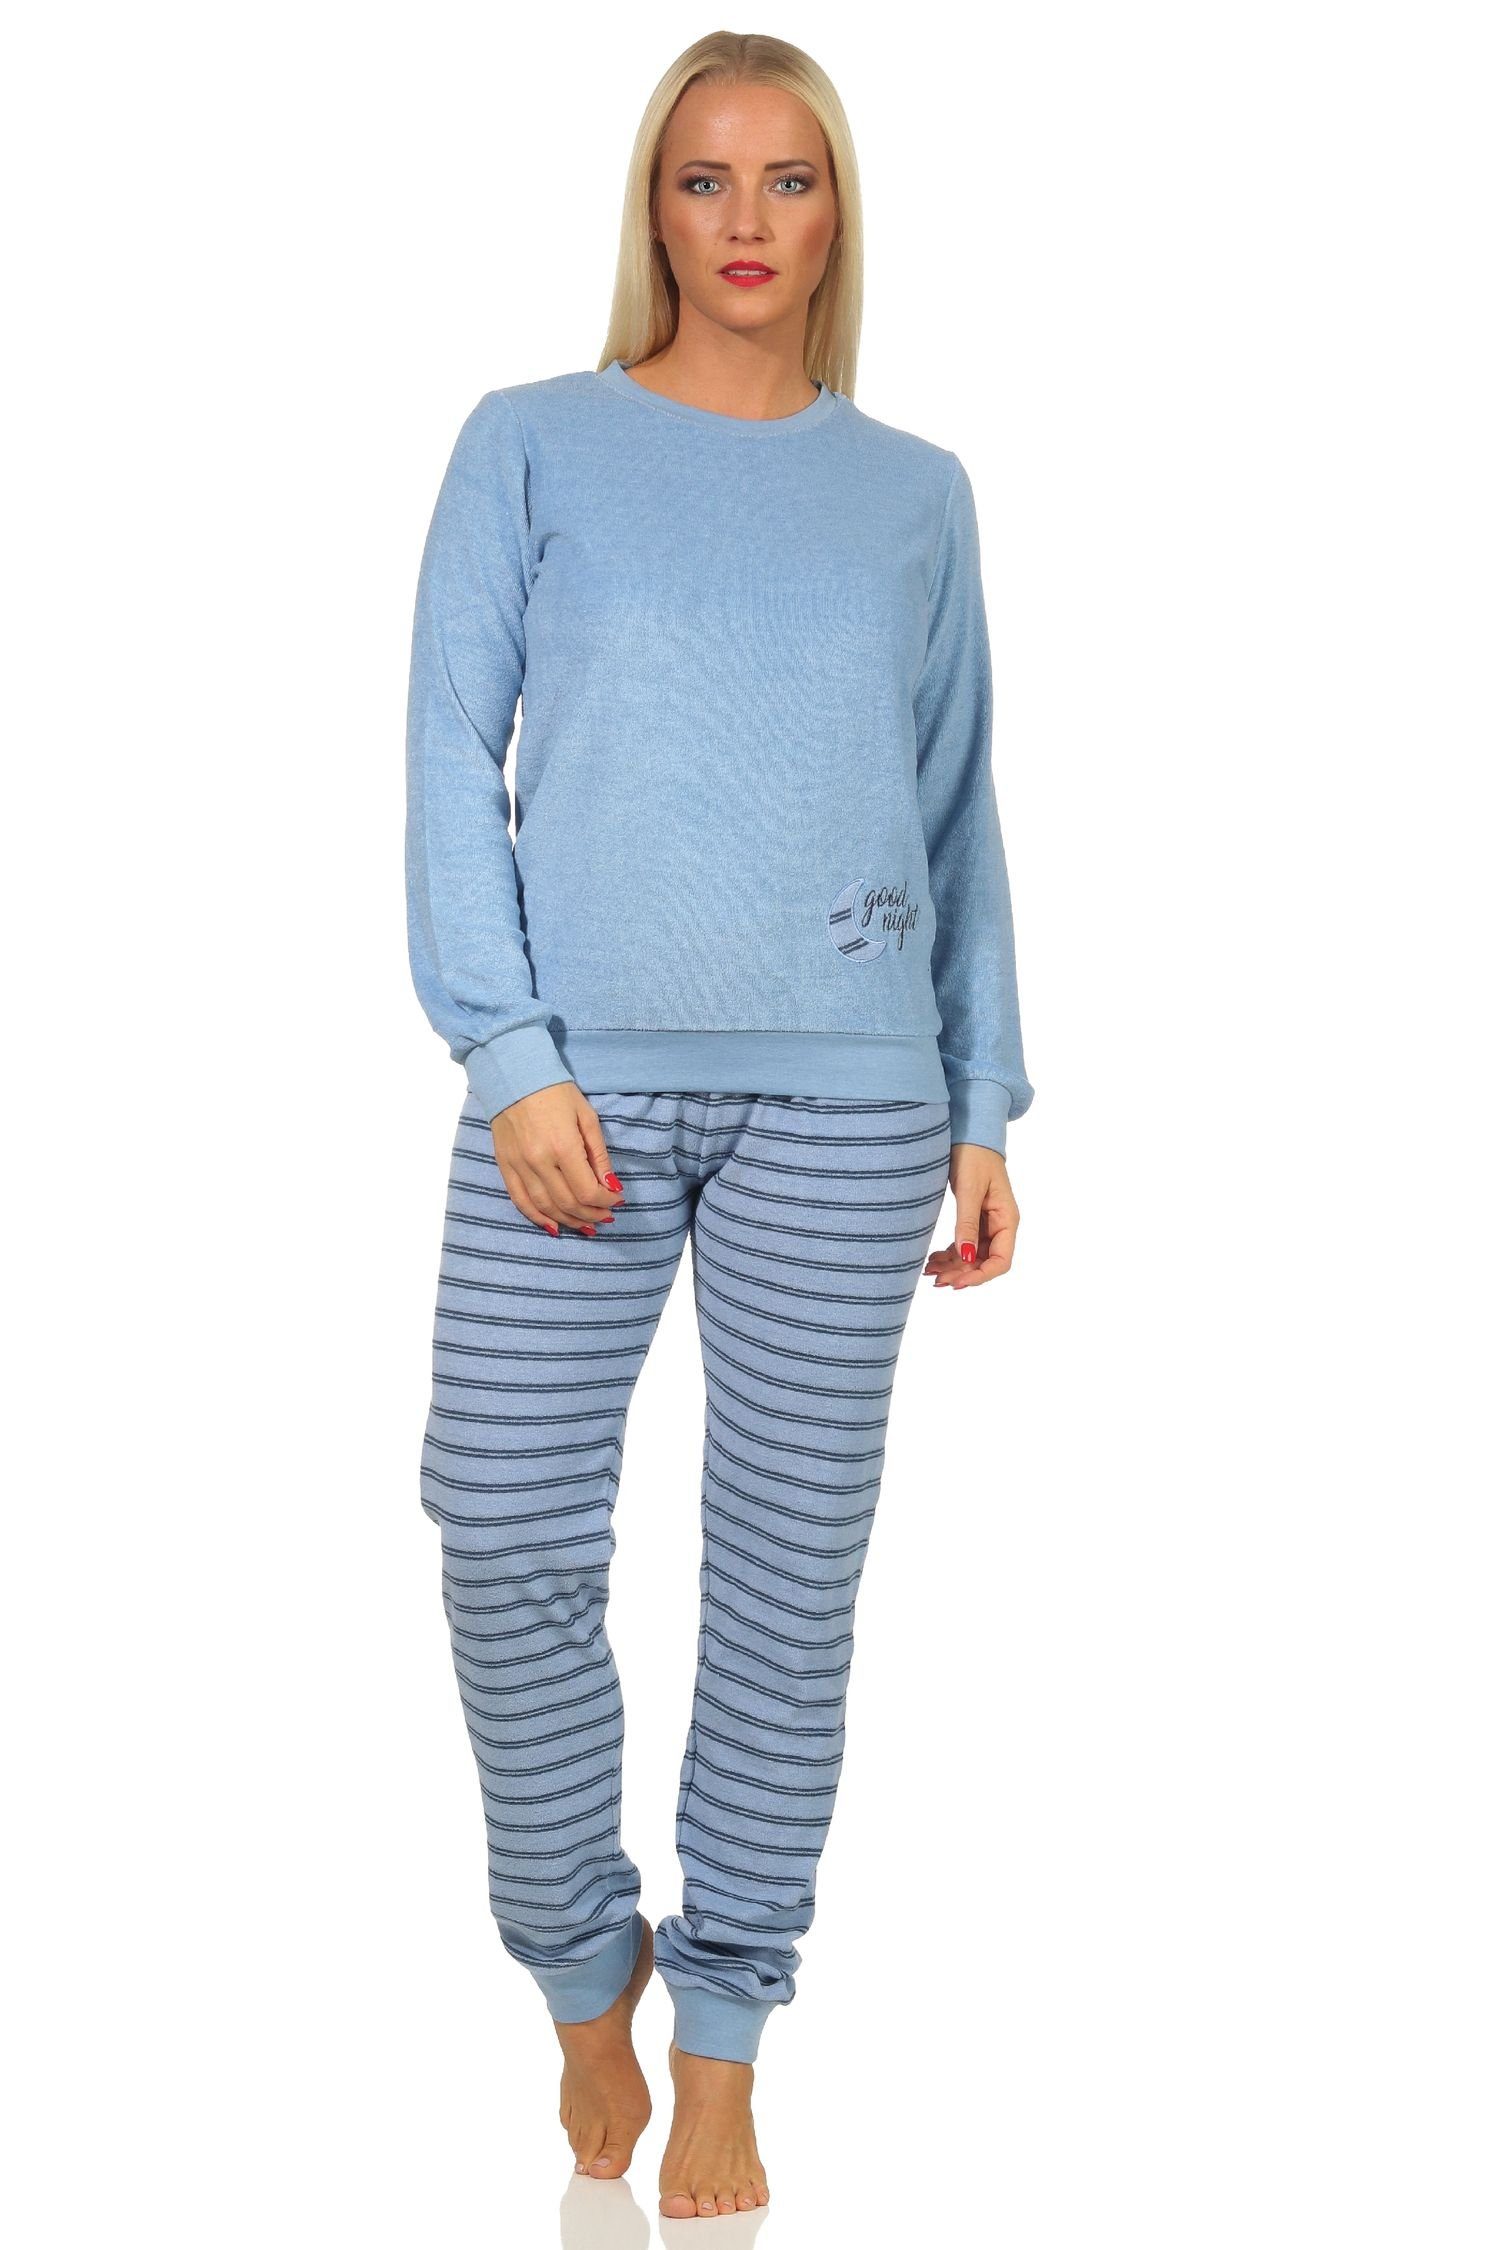 Hose Pyjama gestreift hellblau lang Bündchen, Schlafanzug mit Normann Pyjama Frottee Mädchen